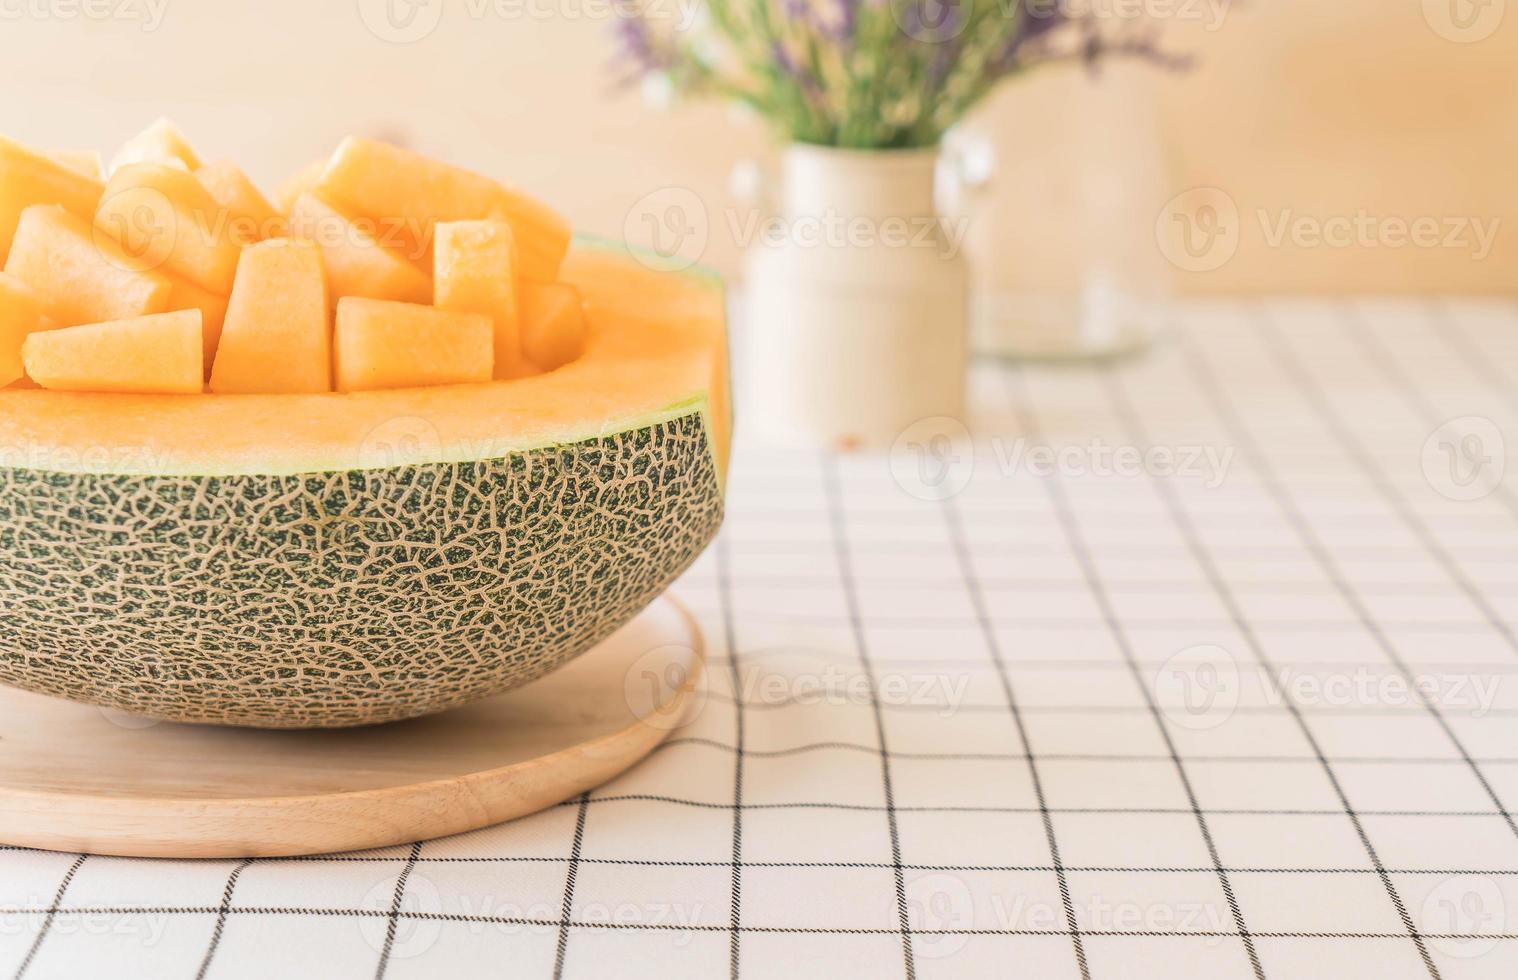 melone cantalupo fresco per dessert sul tavolo foto